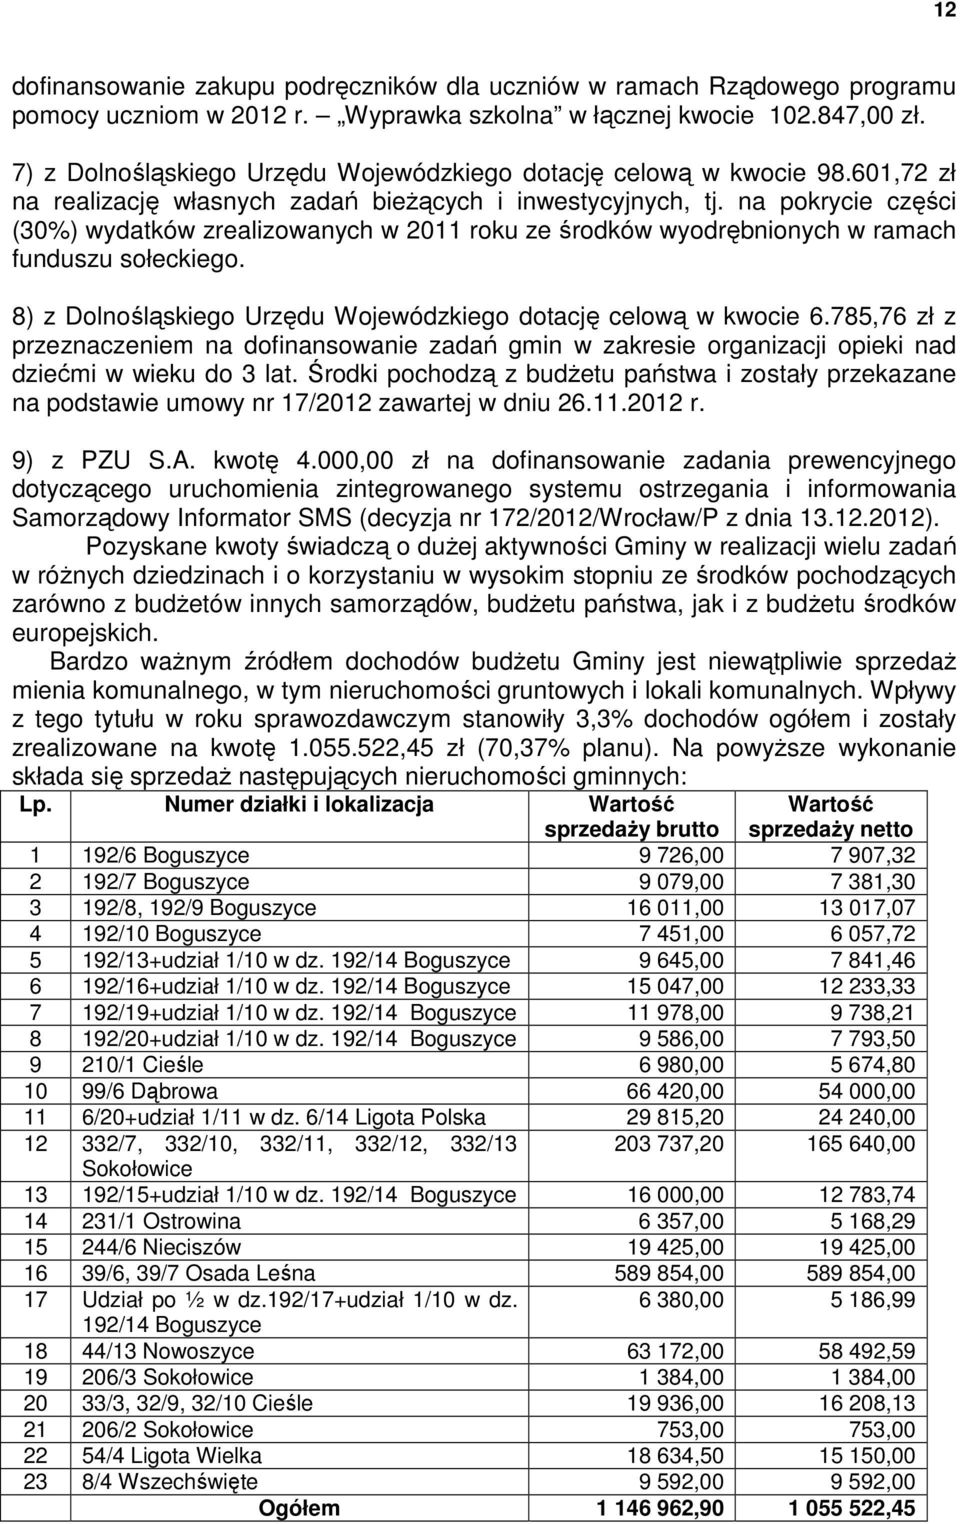 na pokrycie części (30%) wydatków zrealizowanych w 2011 roku ze środków wyodrębnionych w ramach funduszu sołeckiego. 8) z Dolnośląskiego Urzędu Wojewódzkiego dotację celową w kwocie 6.